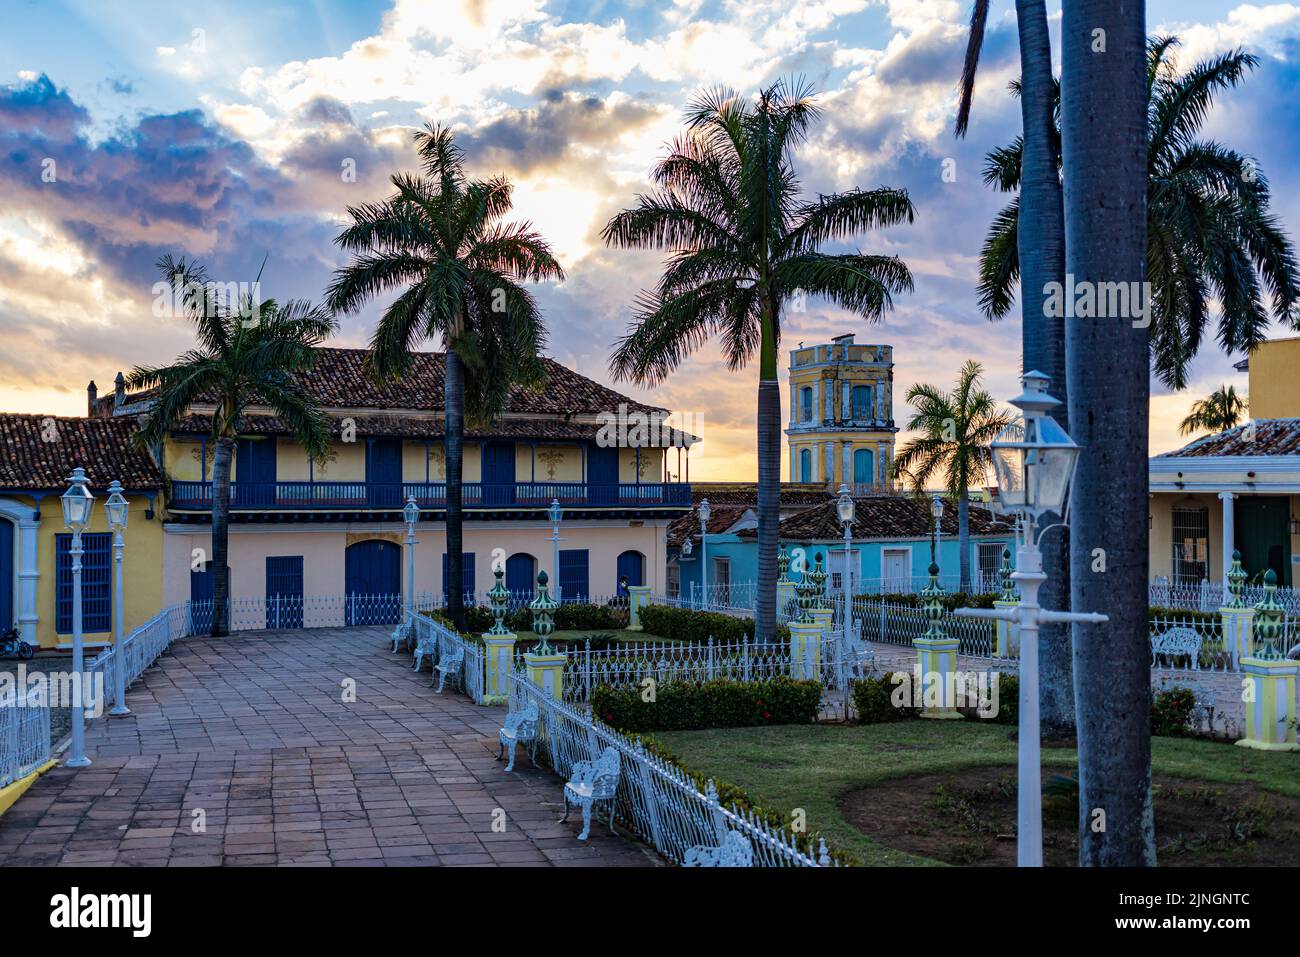 TRINIDAD, CUBA - JANUARY 7, 2021: The main square in Trinidad, Cuba Stock Photo